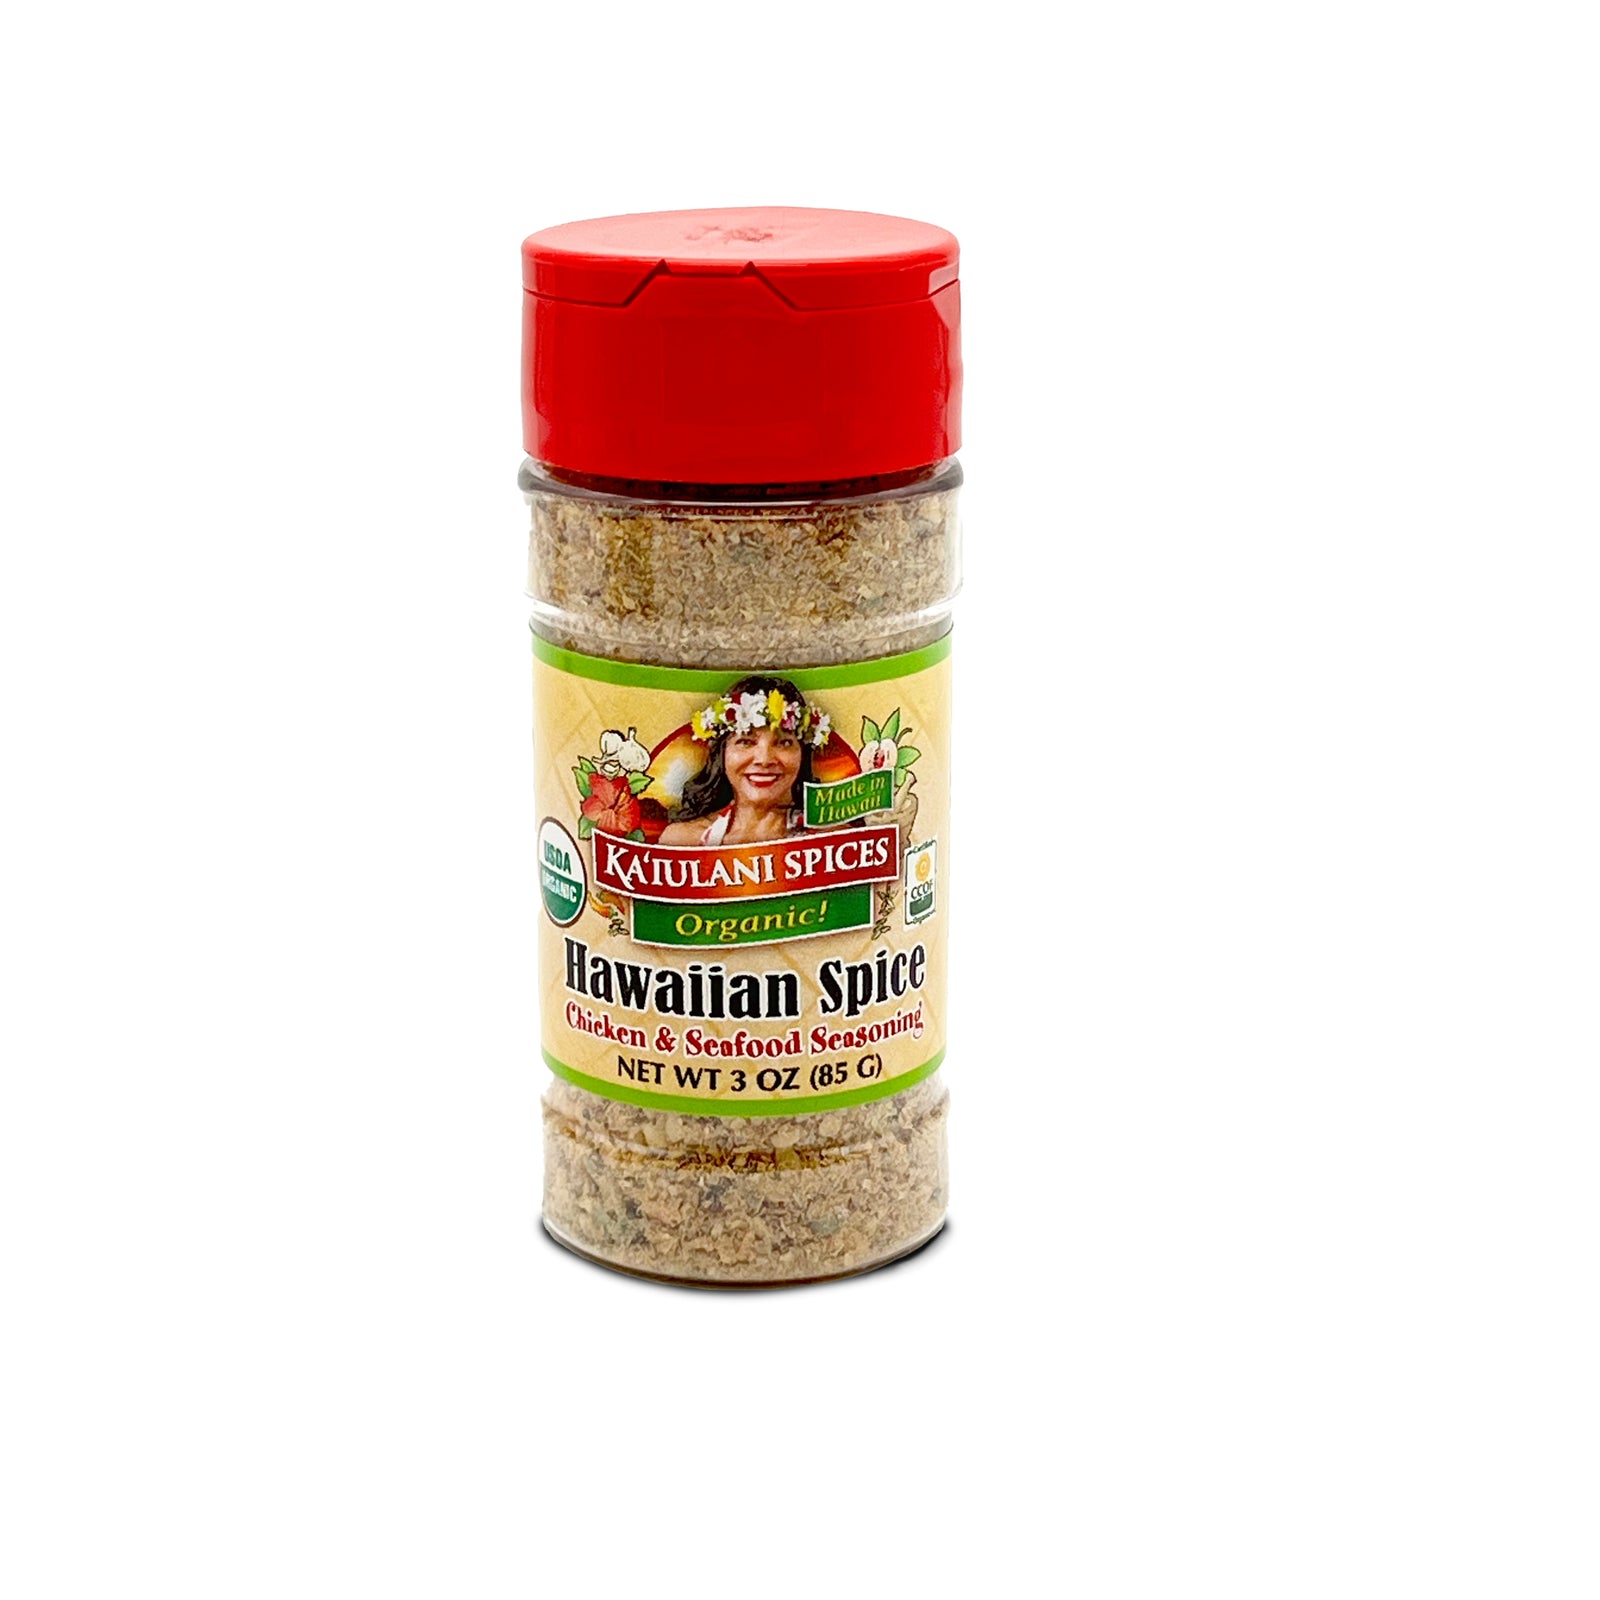 Pop-Up Mākeke - Ka'iulani Spices LLC - Hawaiian Spice Chicken & Seafood Seasoning